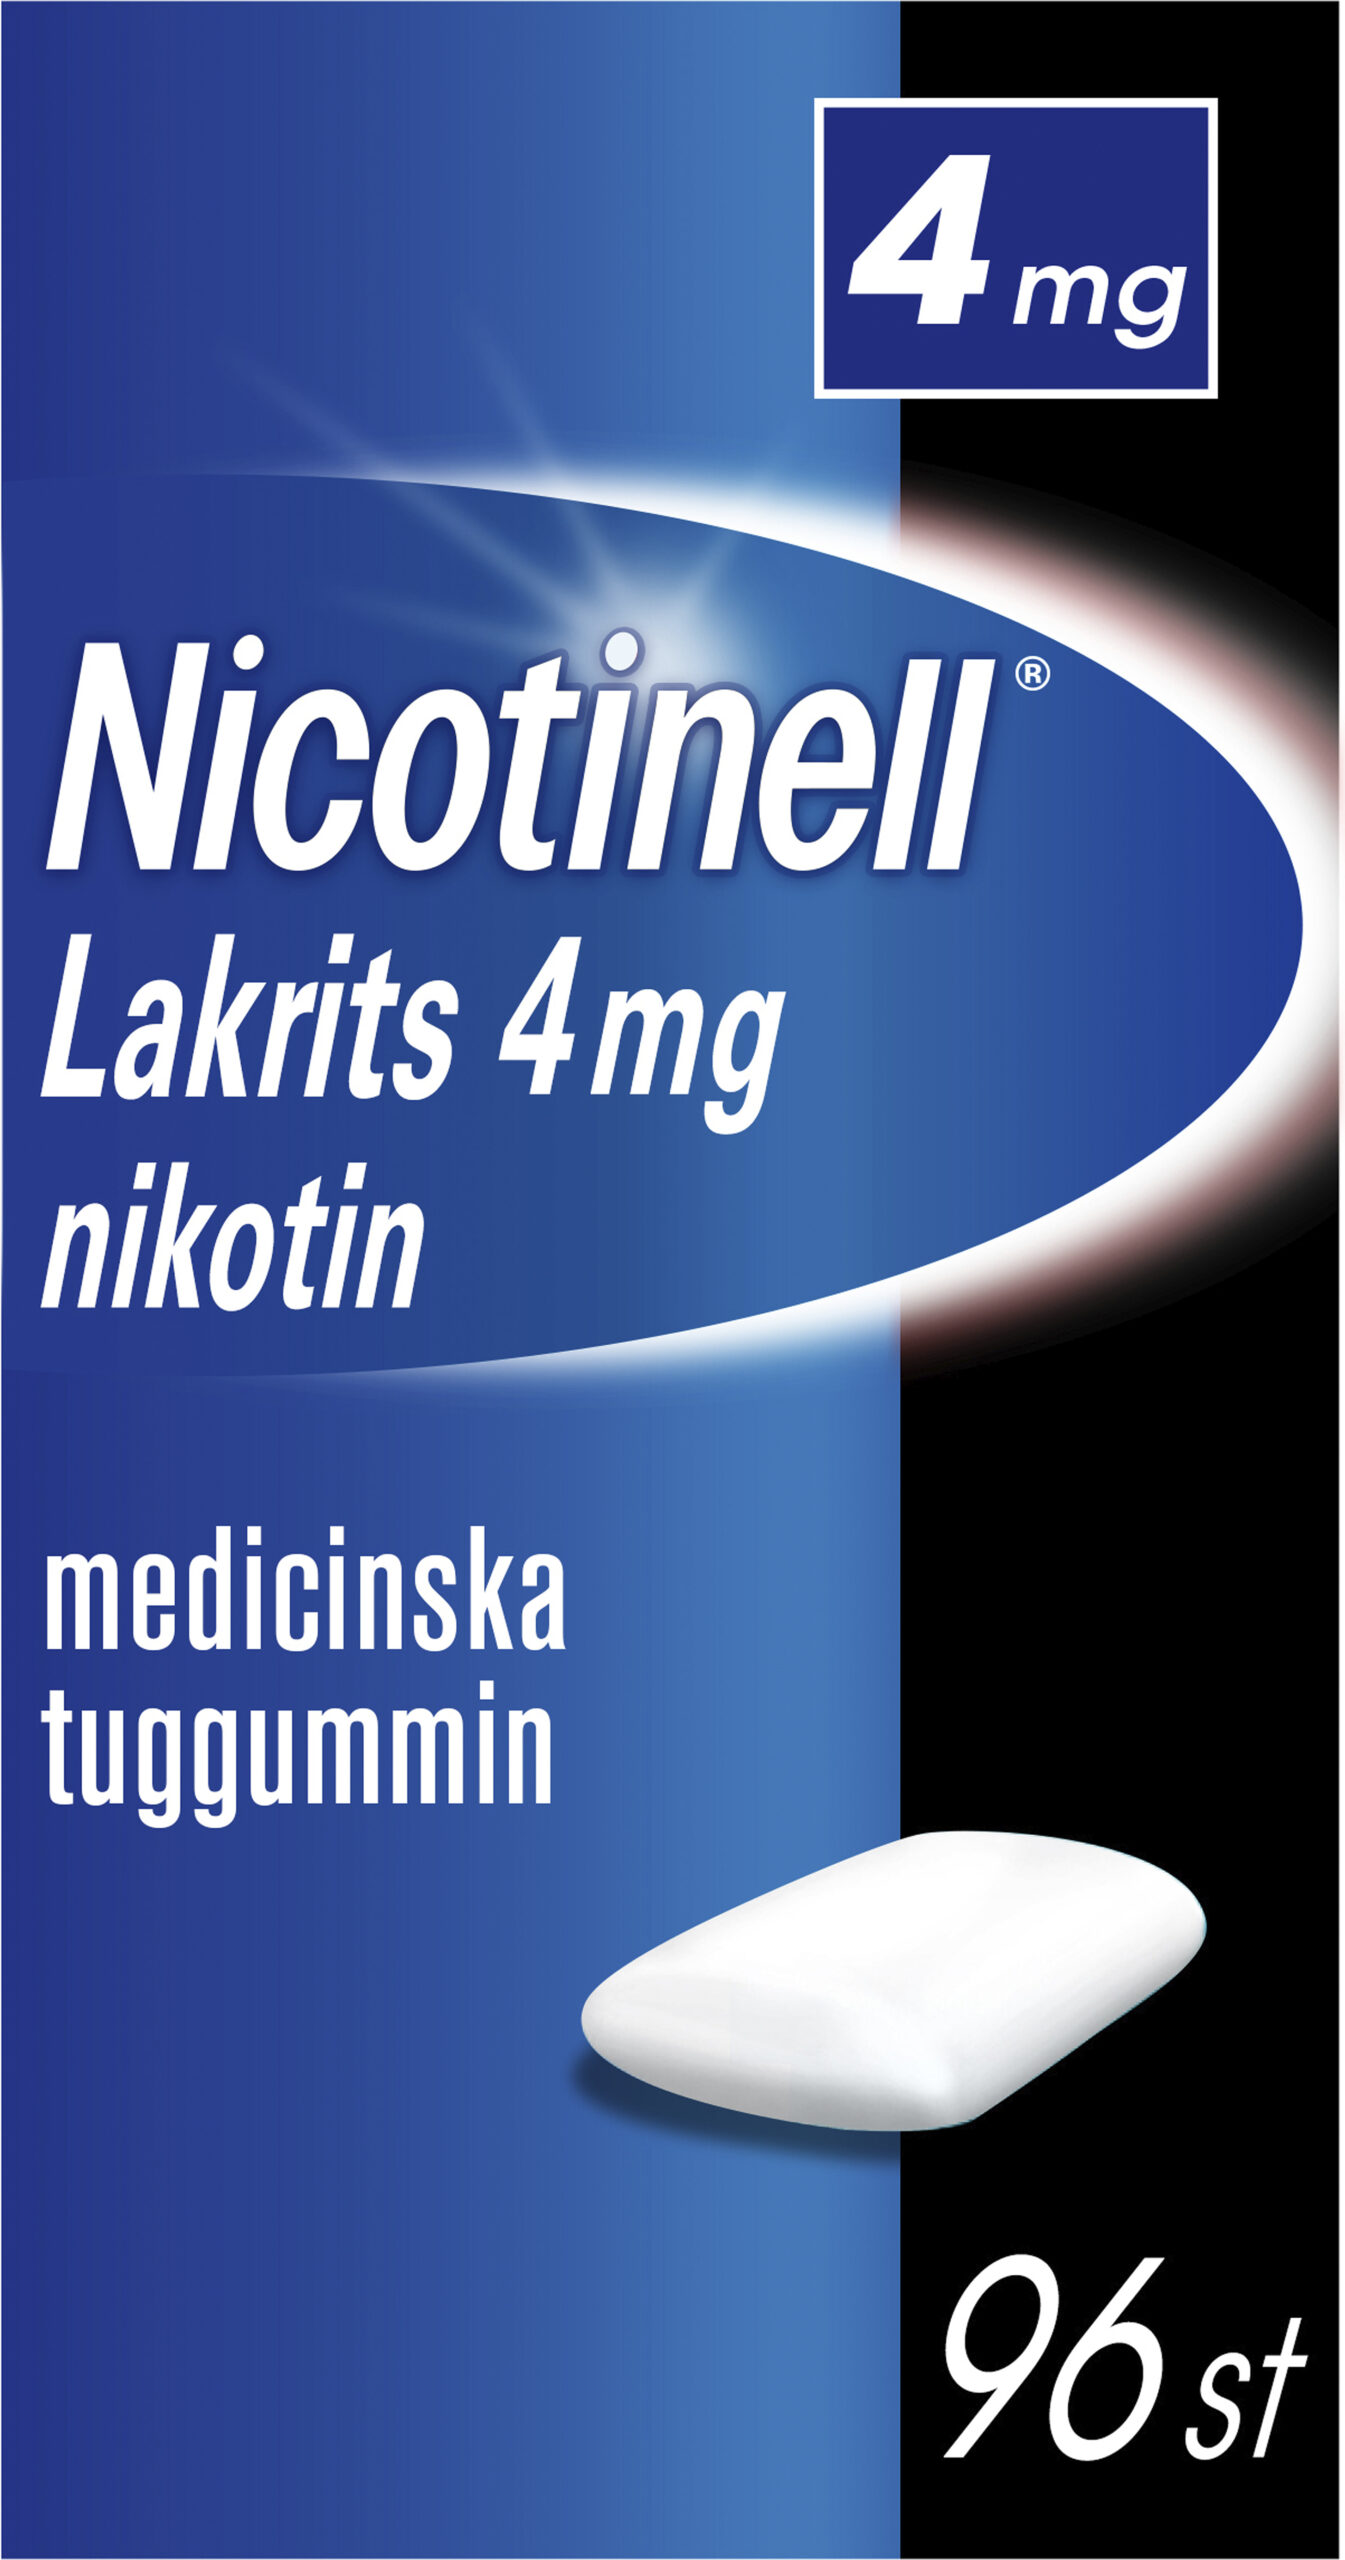 Nicotinell Lakrits nikotintuggummi 4 mg 96 st